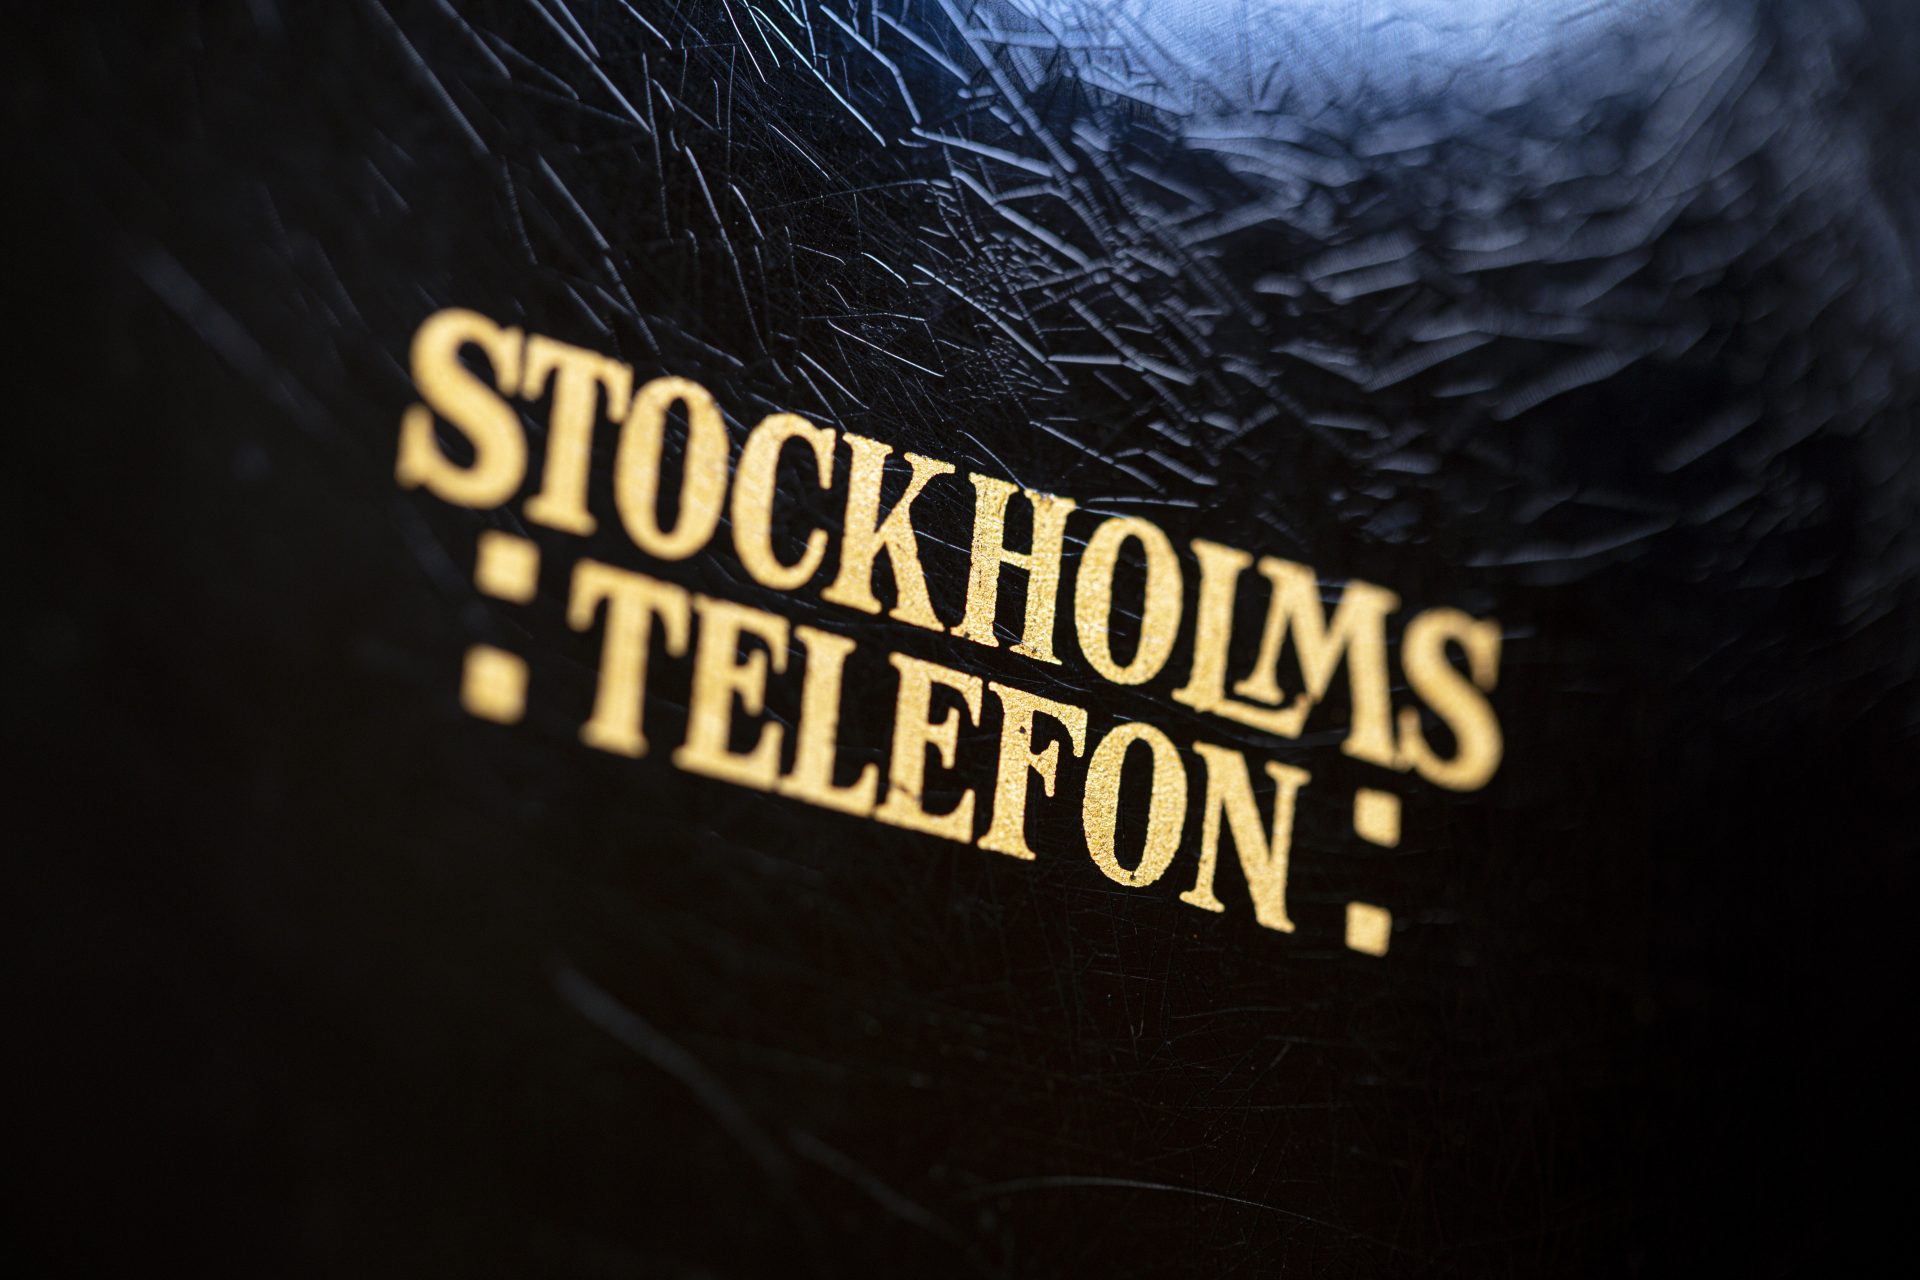 Detaljbild av texten Stockholmstelefon i guld mot svart botten.